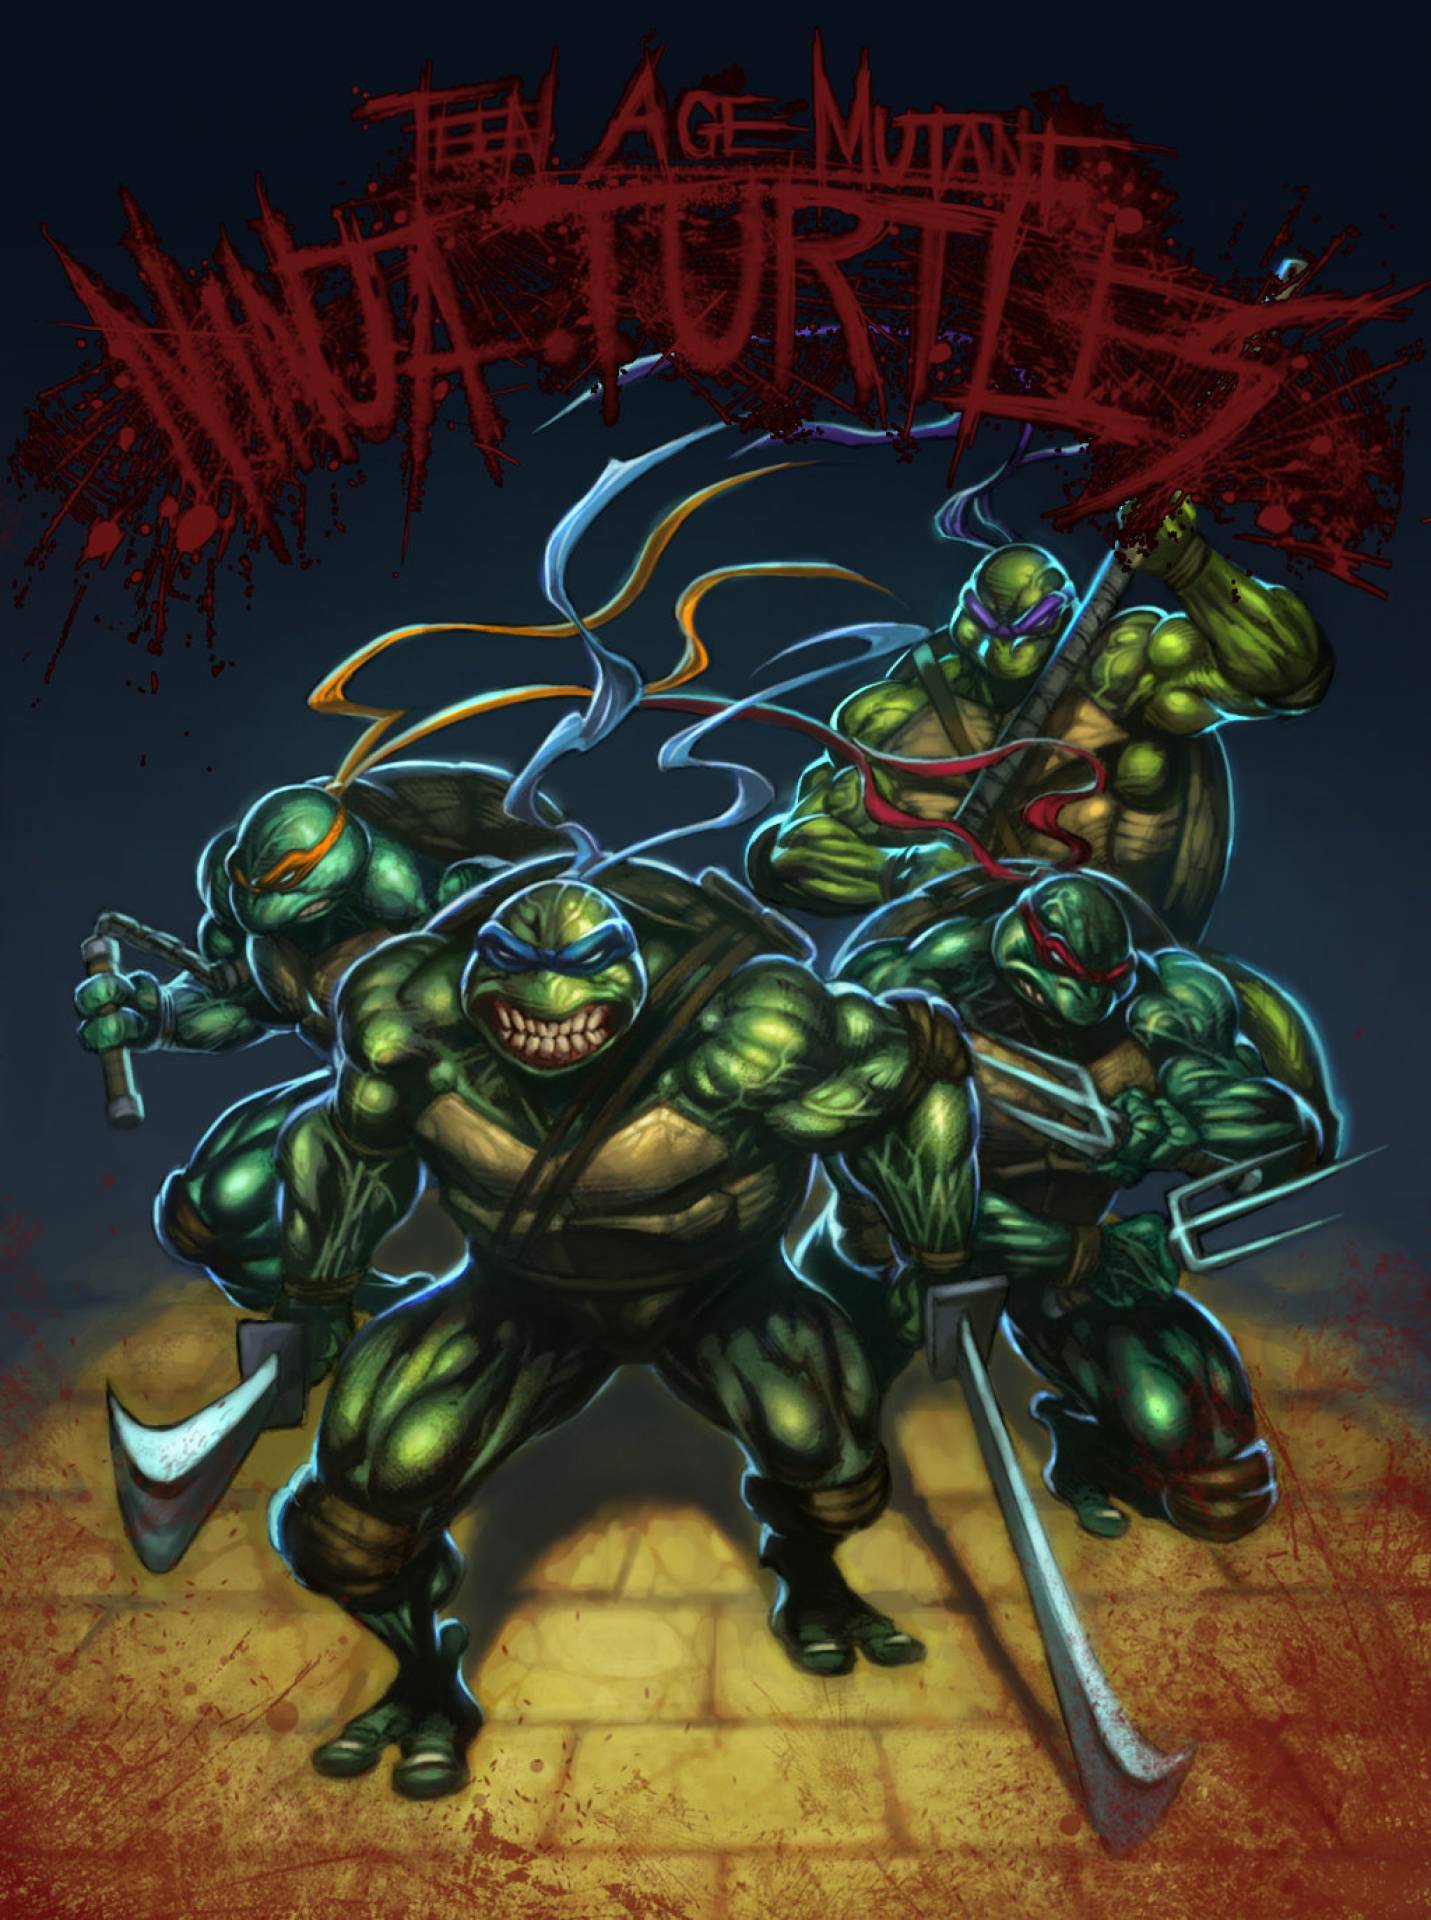 Playmates Teenage Mutant Ninja Turtles TMNT Mirage Studios Rat